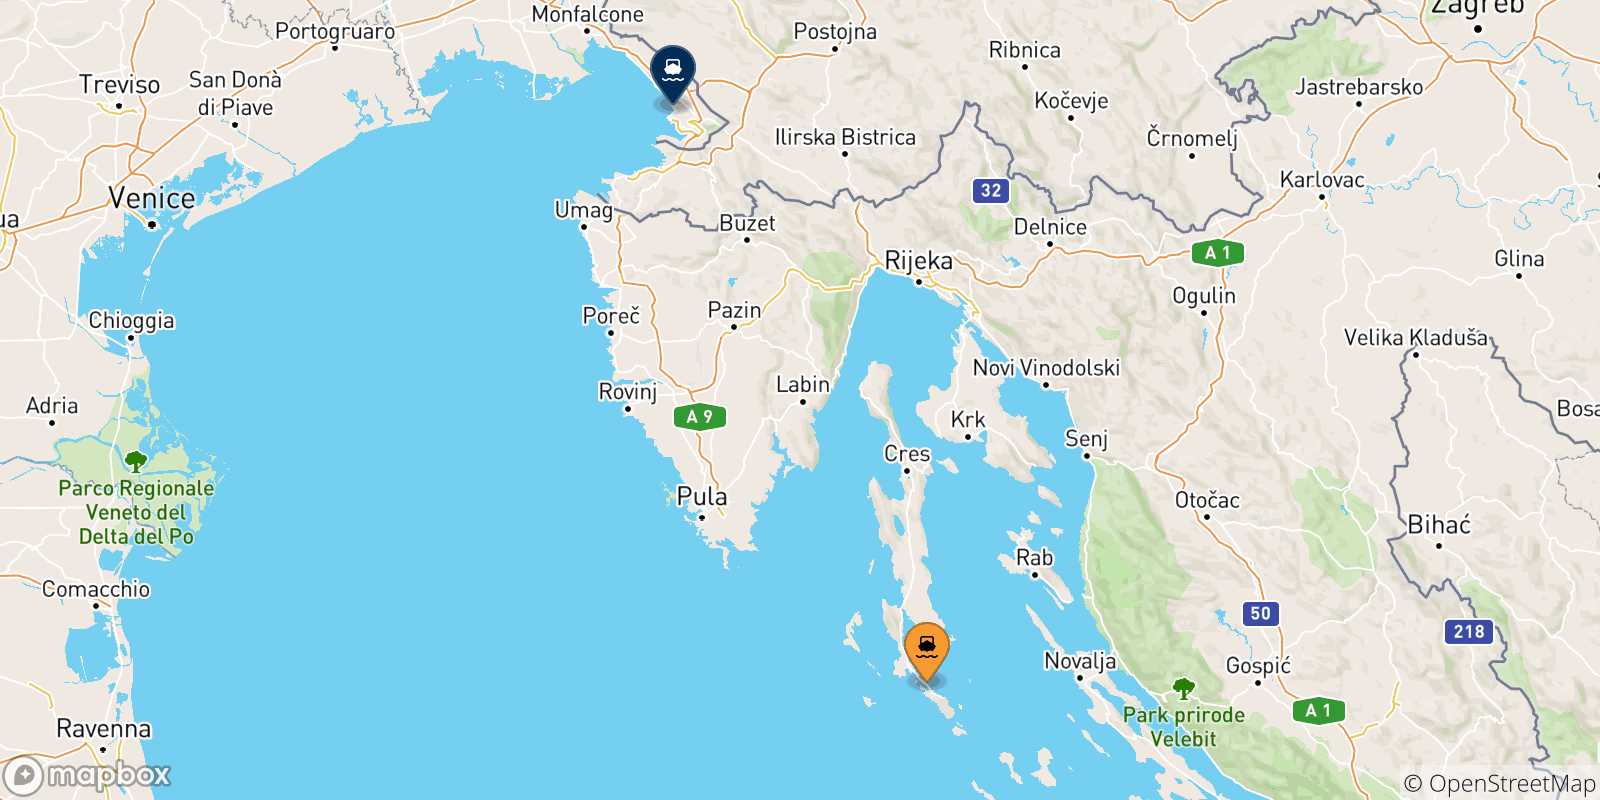 Mappa delle possibili rotte tra Lussinpiccolo e l'Italia